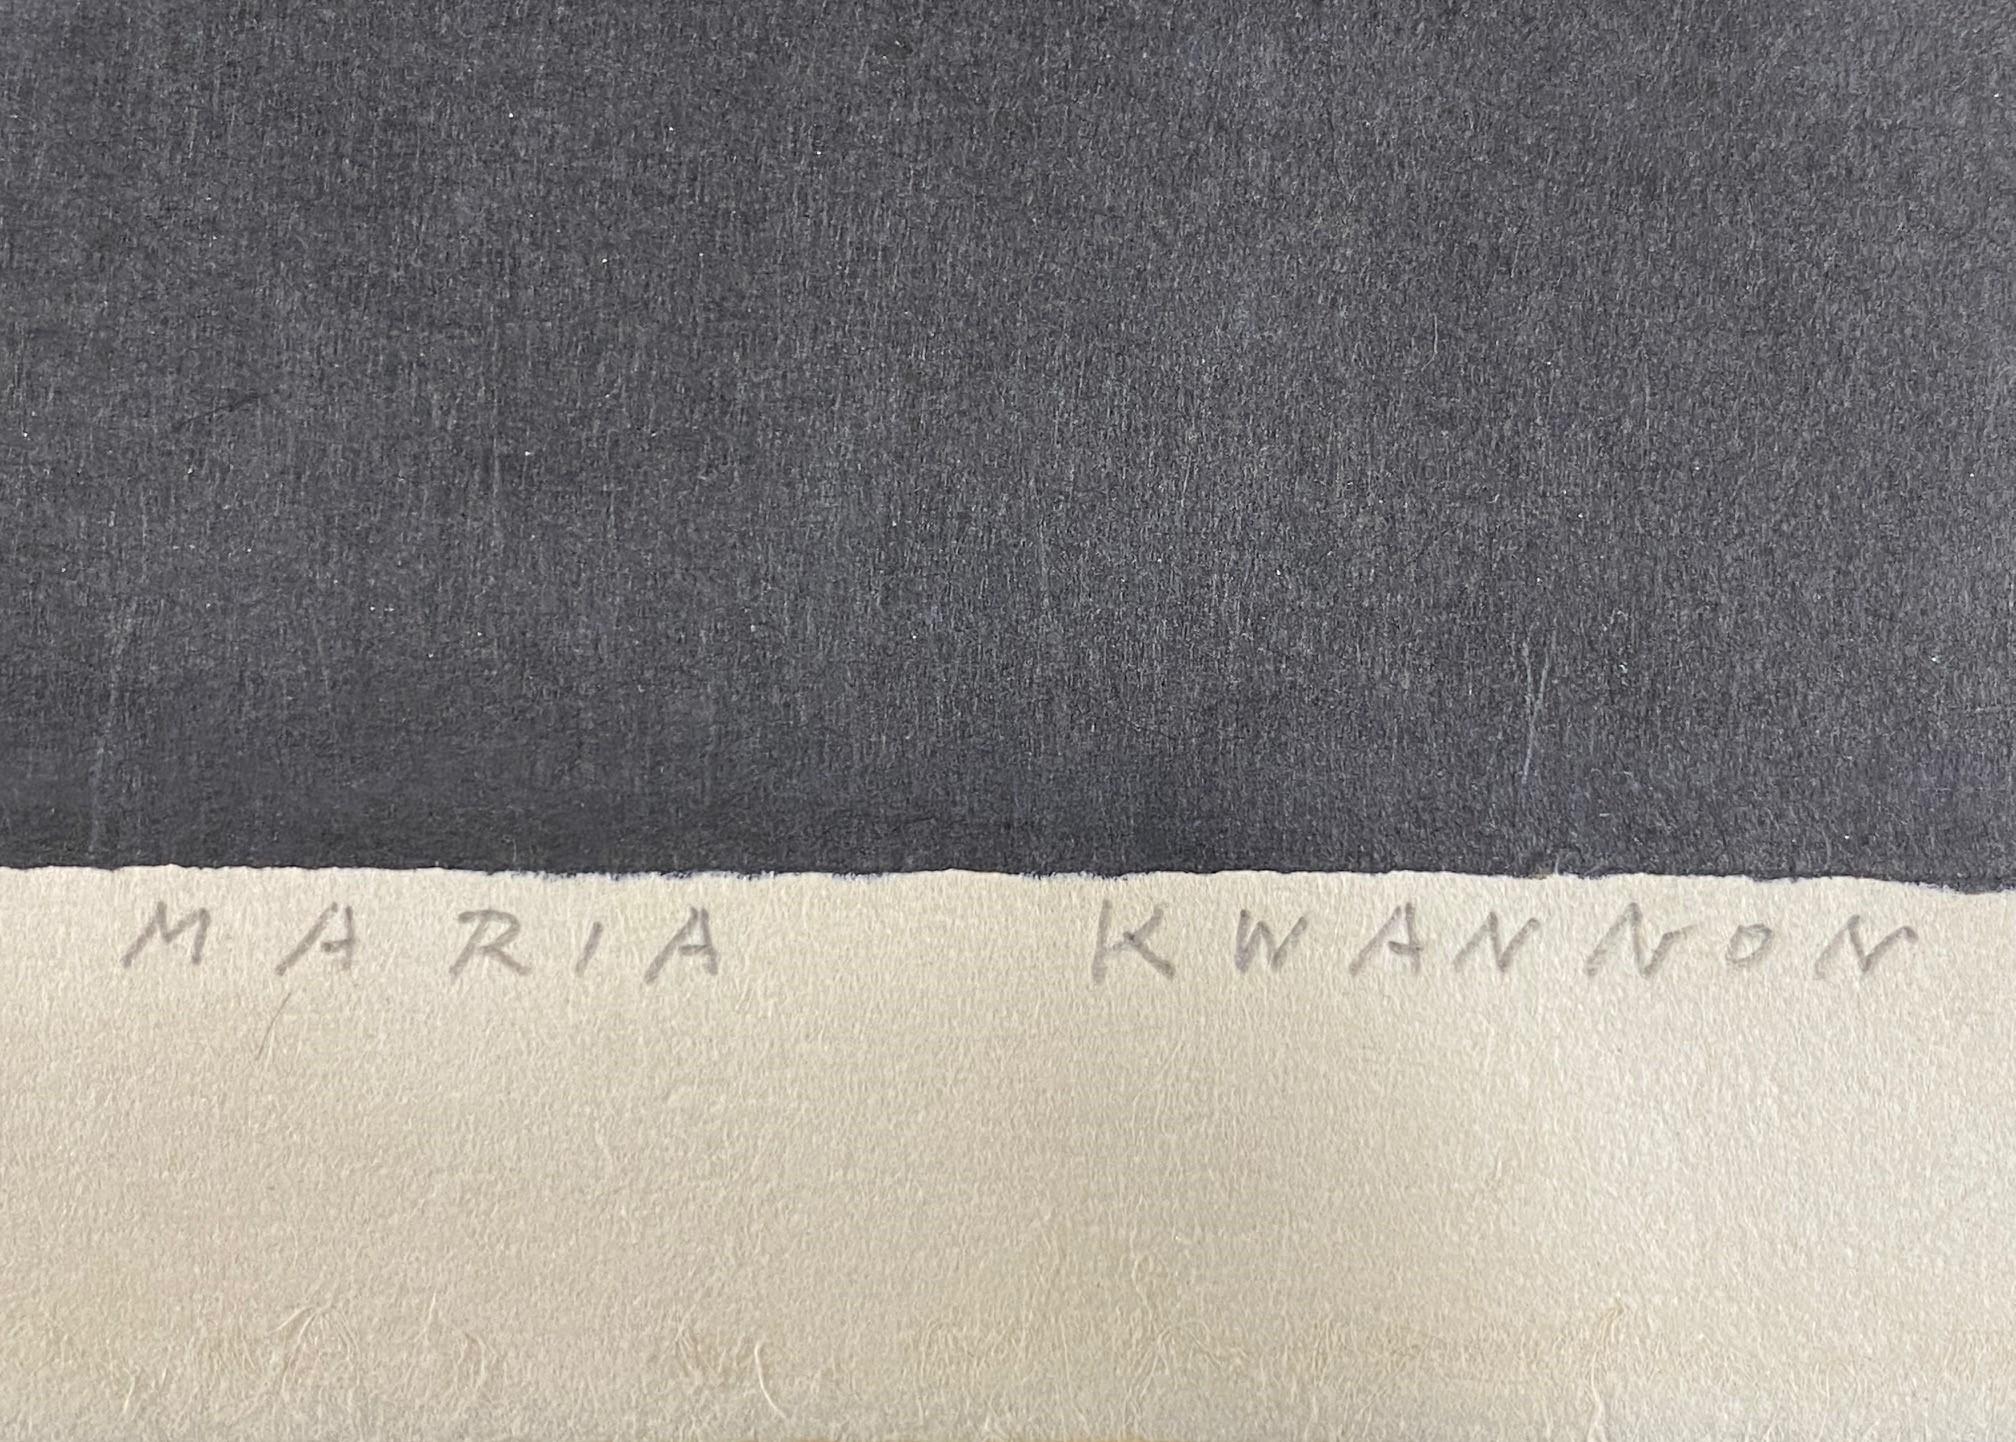 Kaoru Kawano Signed Rare Limited Edition Japanese Woodblock Print Maria Kwannon 3